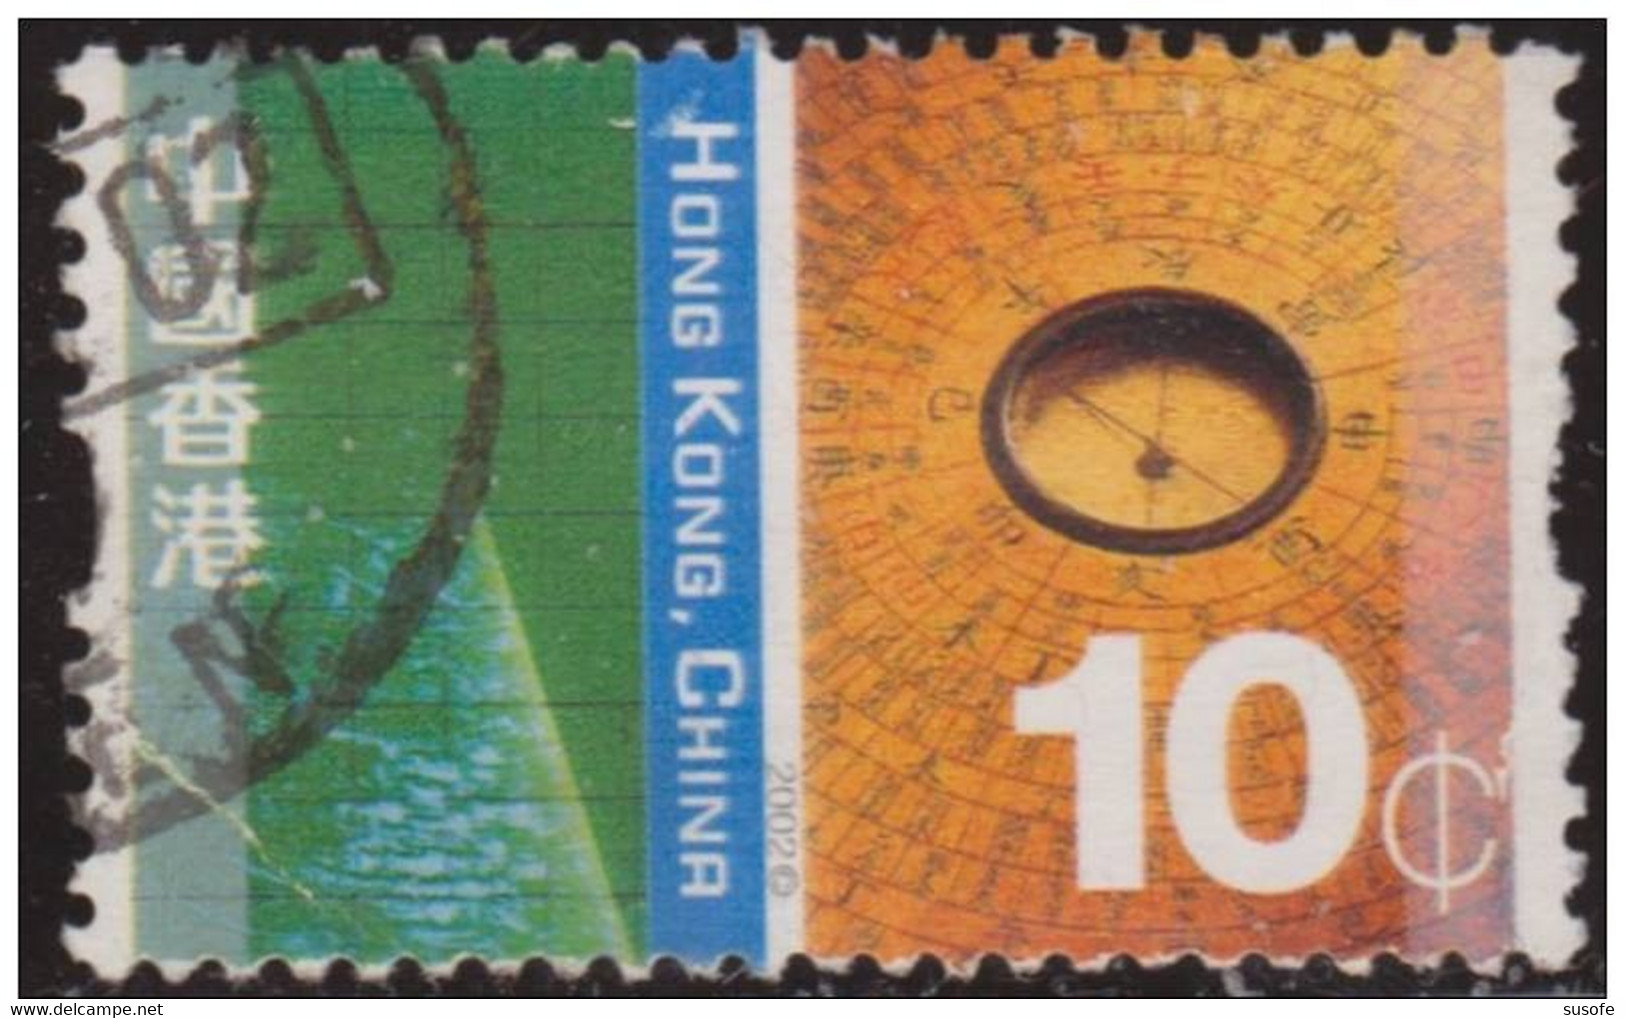 Hong Kong China 2002 Scott 998 Sello º Cultural Diversity Navegacion Michel 1055 Yvert 1027 Stamps Timbre Briefmarke - Usados